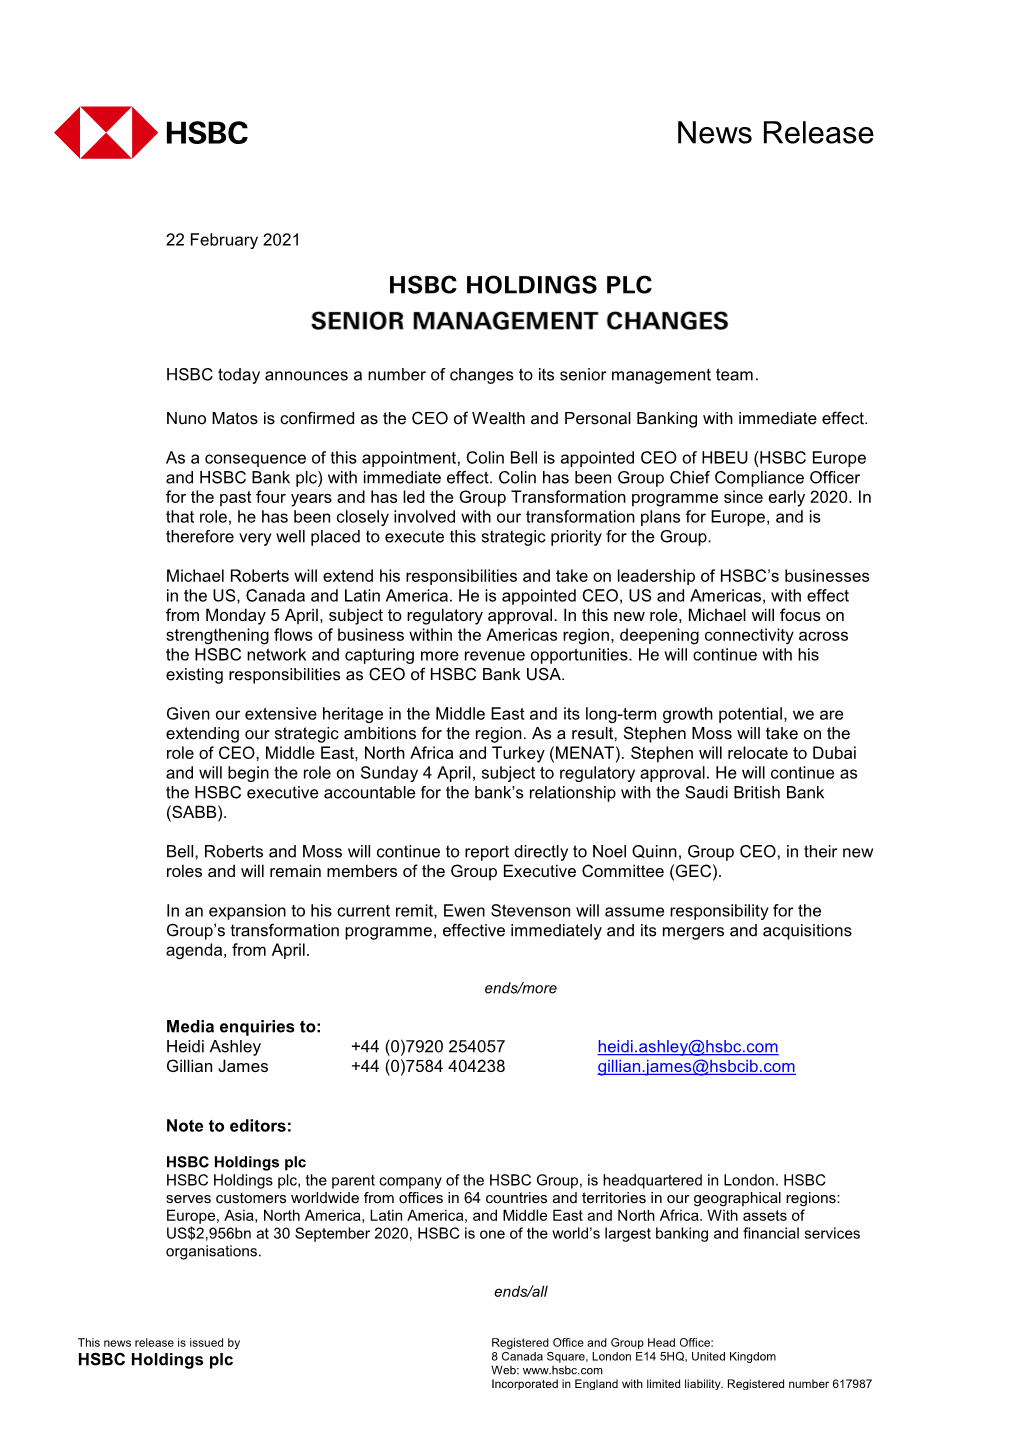 HSBC Holdings Plc Senior Management Changes